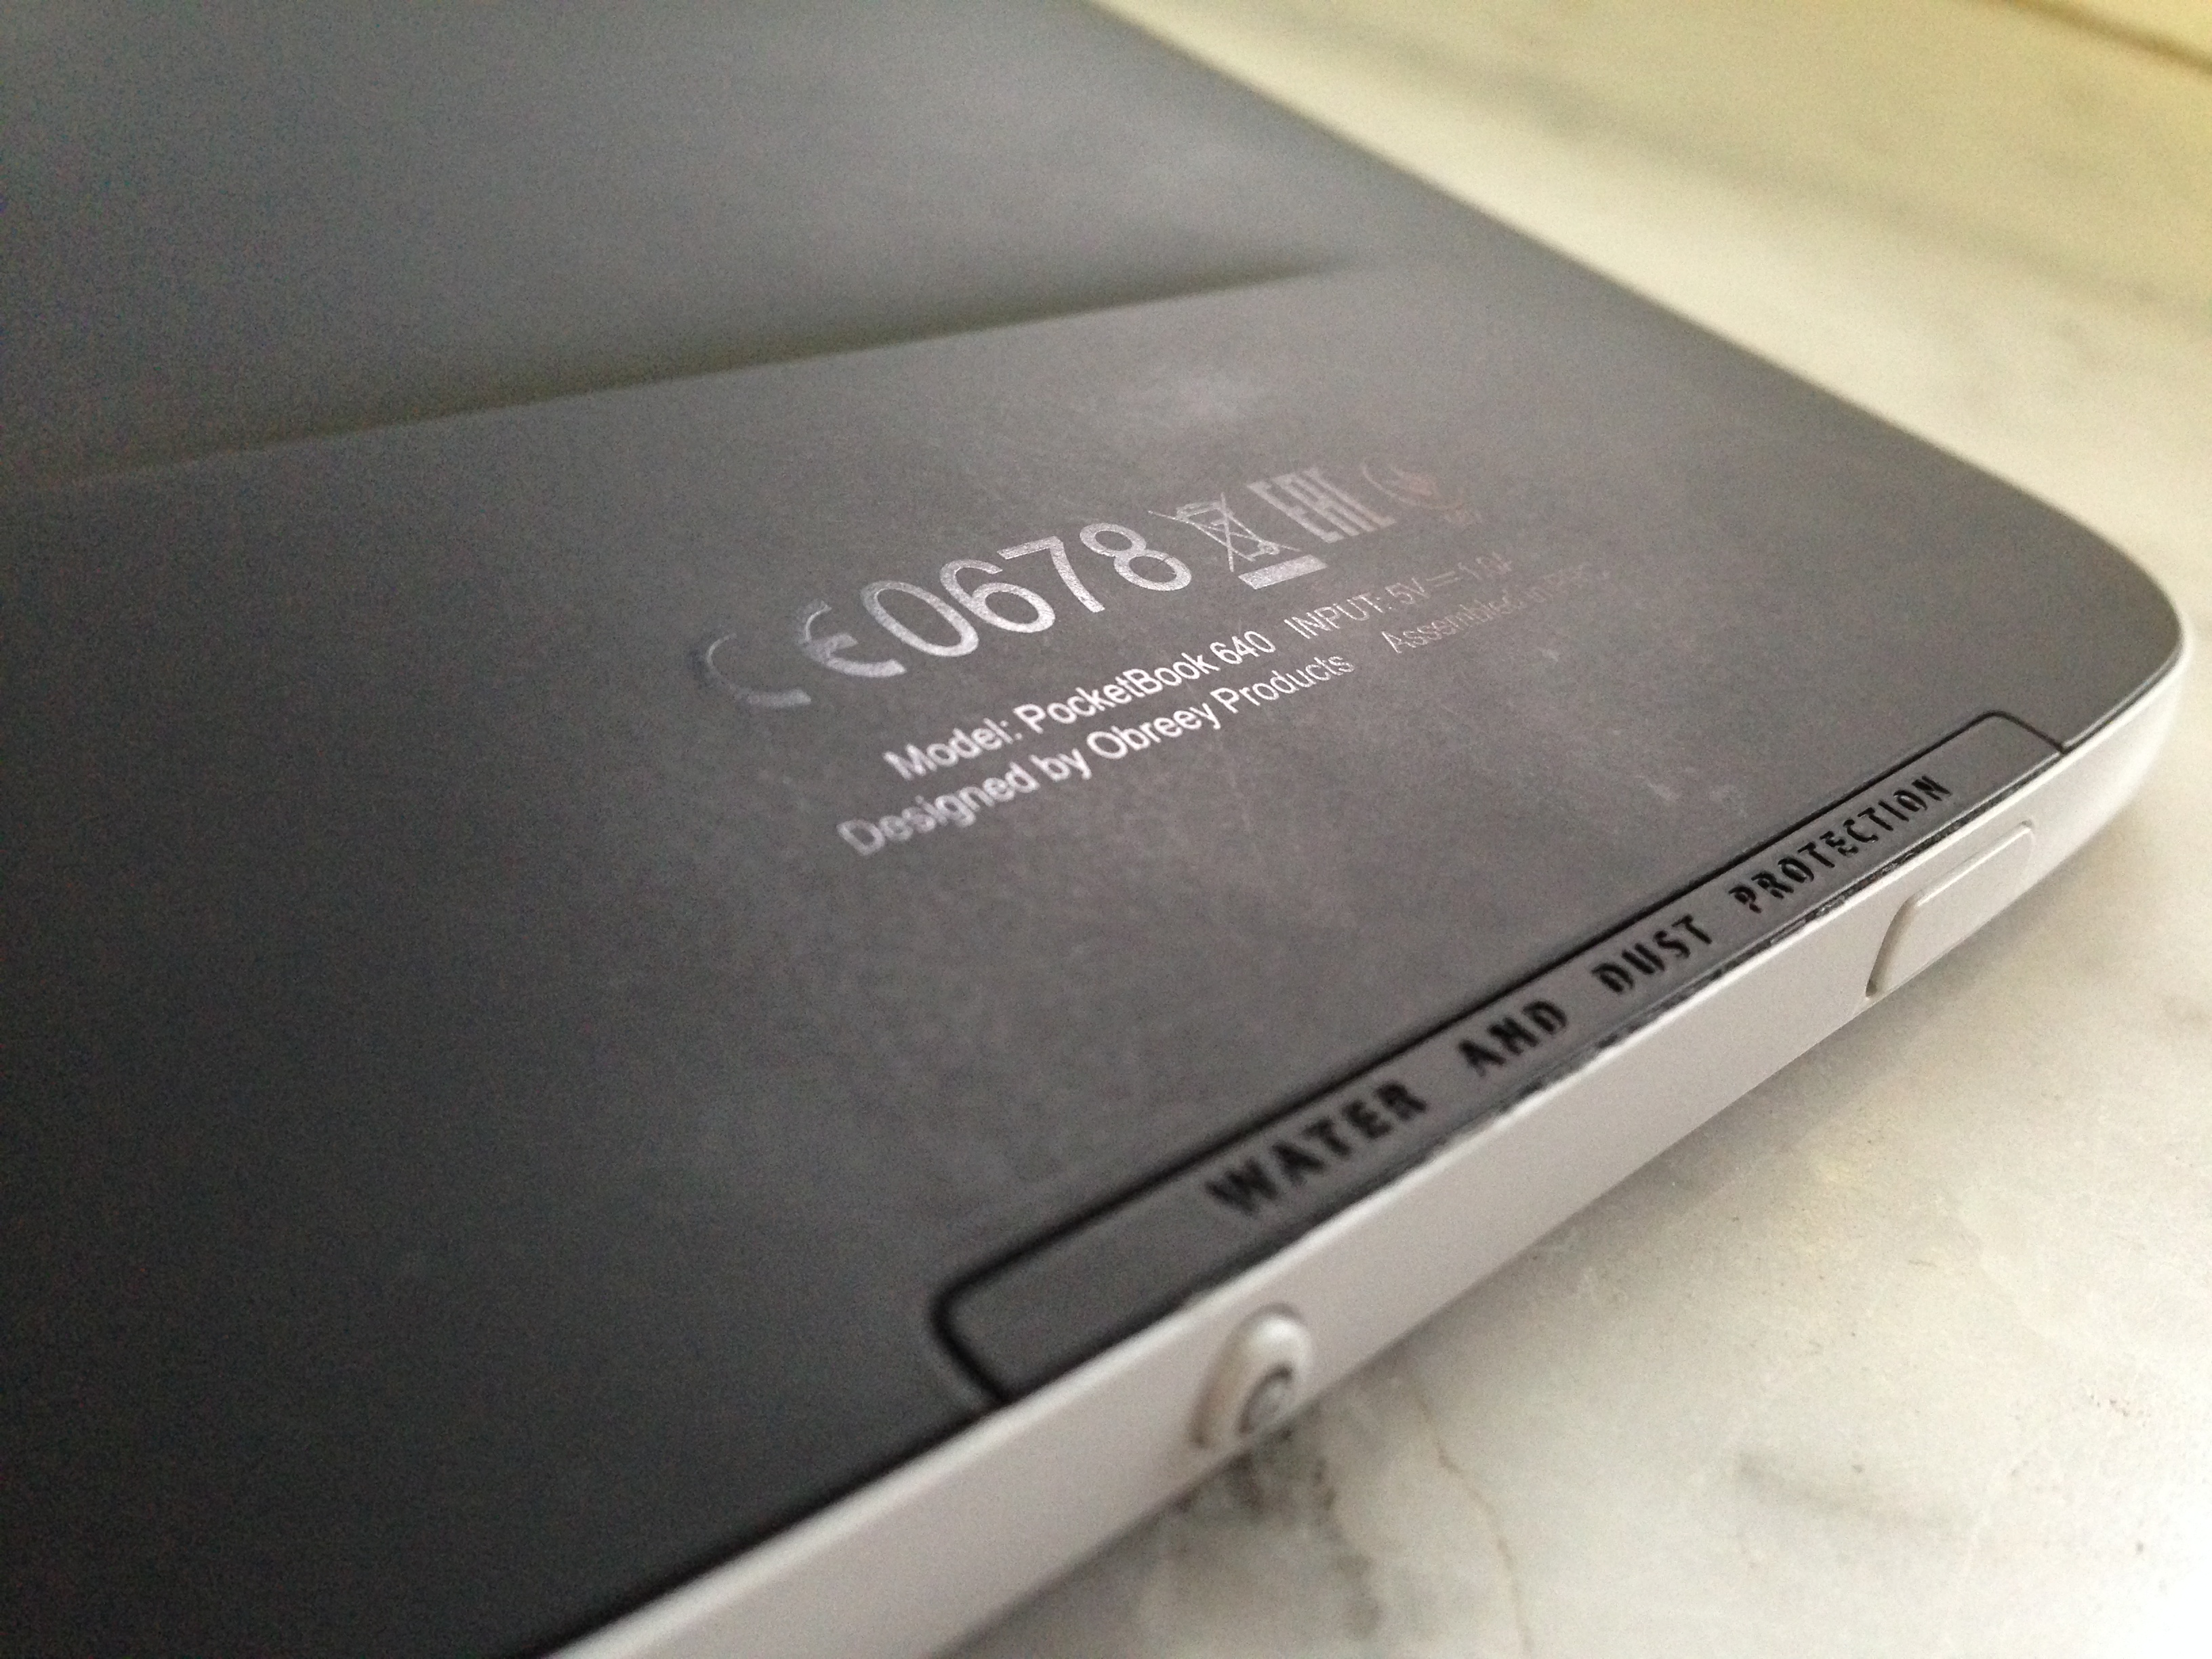 Ридер PocketBook 640.